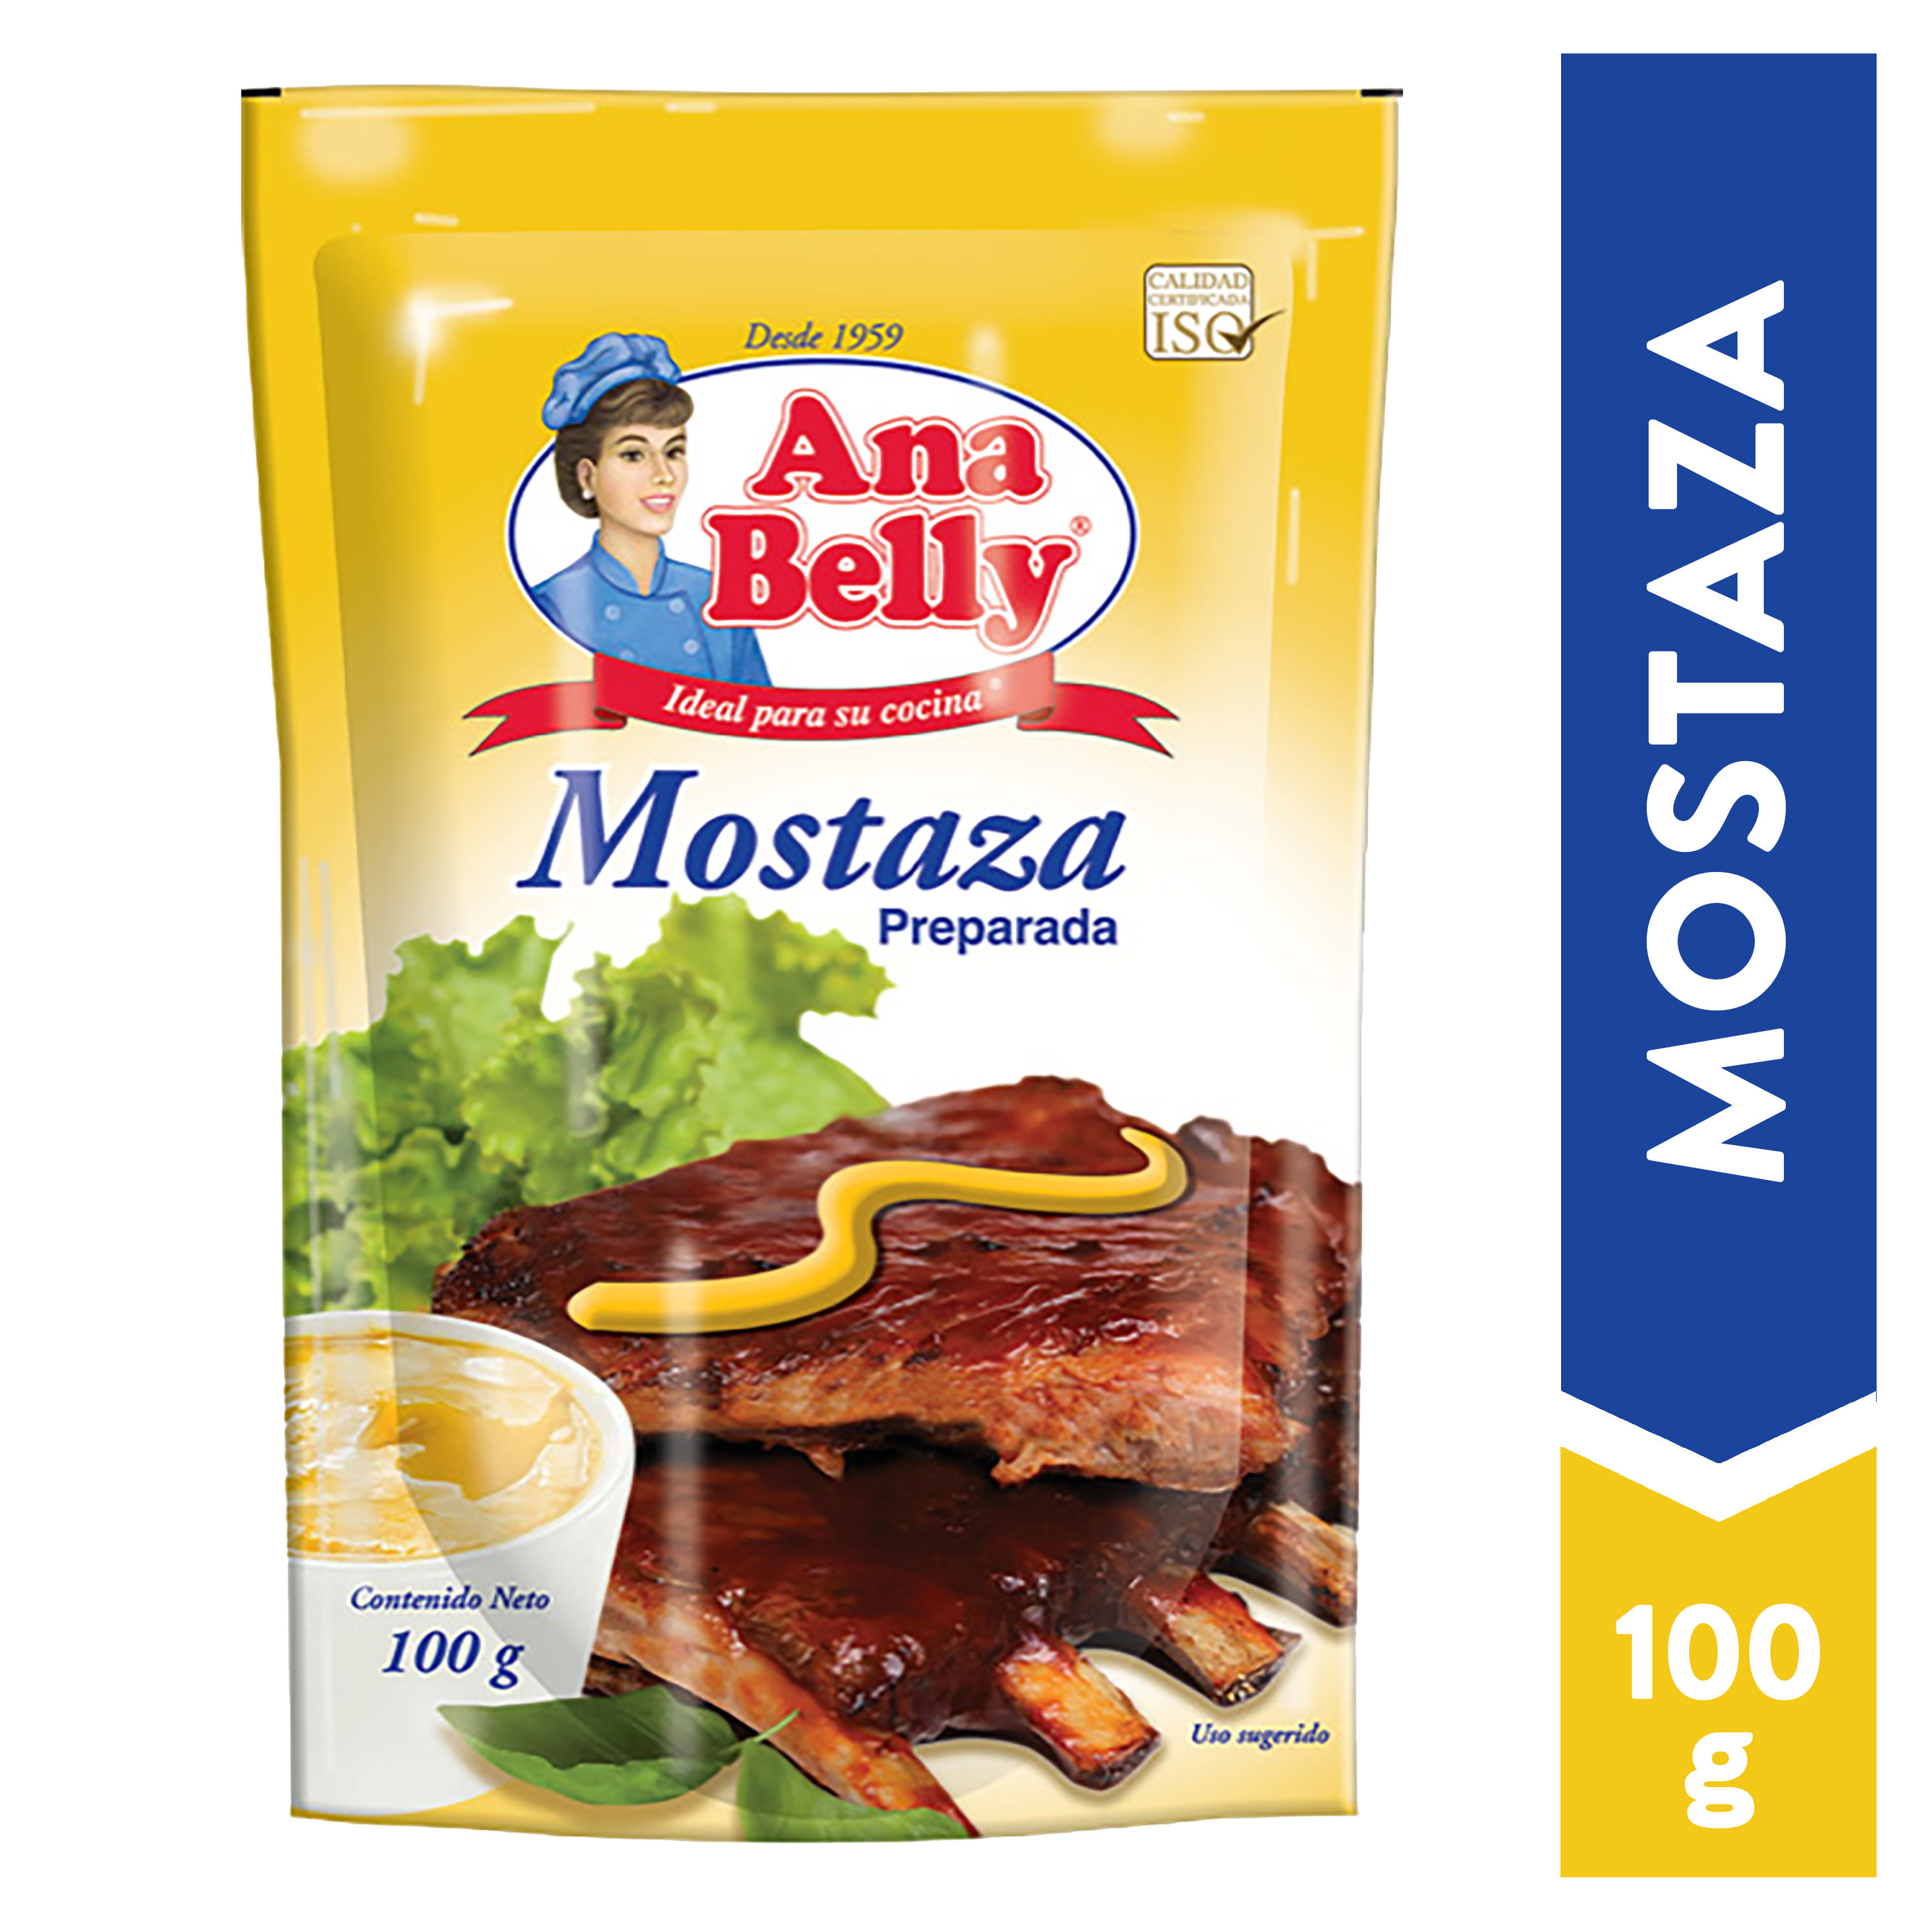 Doy-Pack-Mostaza-Ana-Belly-Preparada-100gr-1-22188